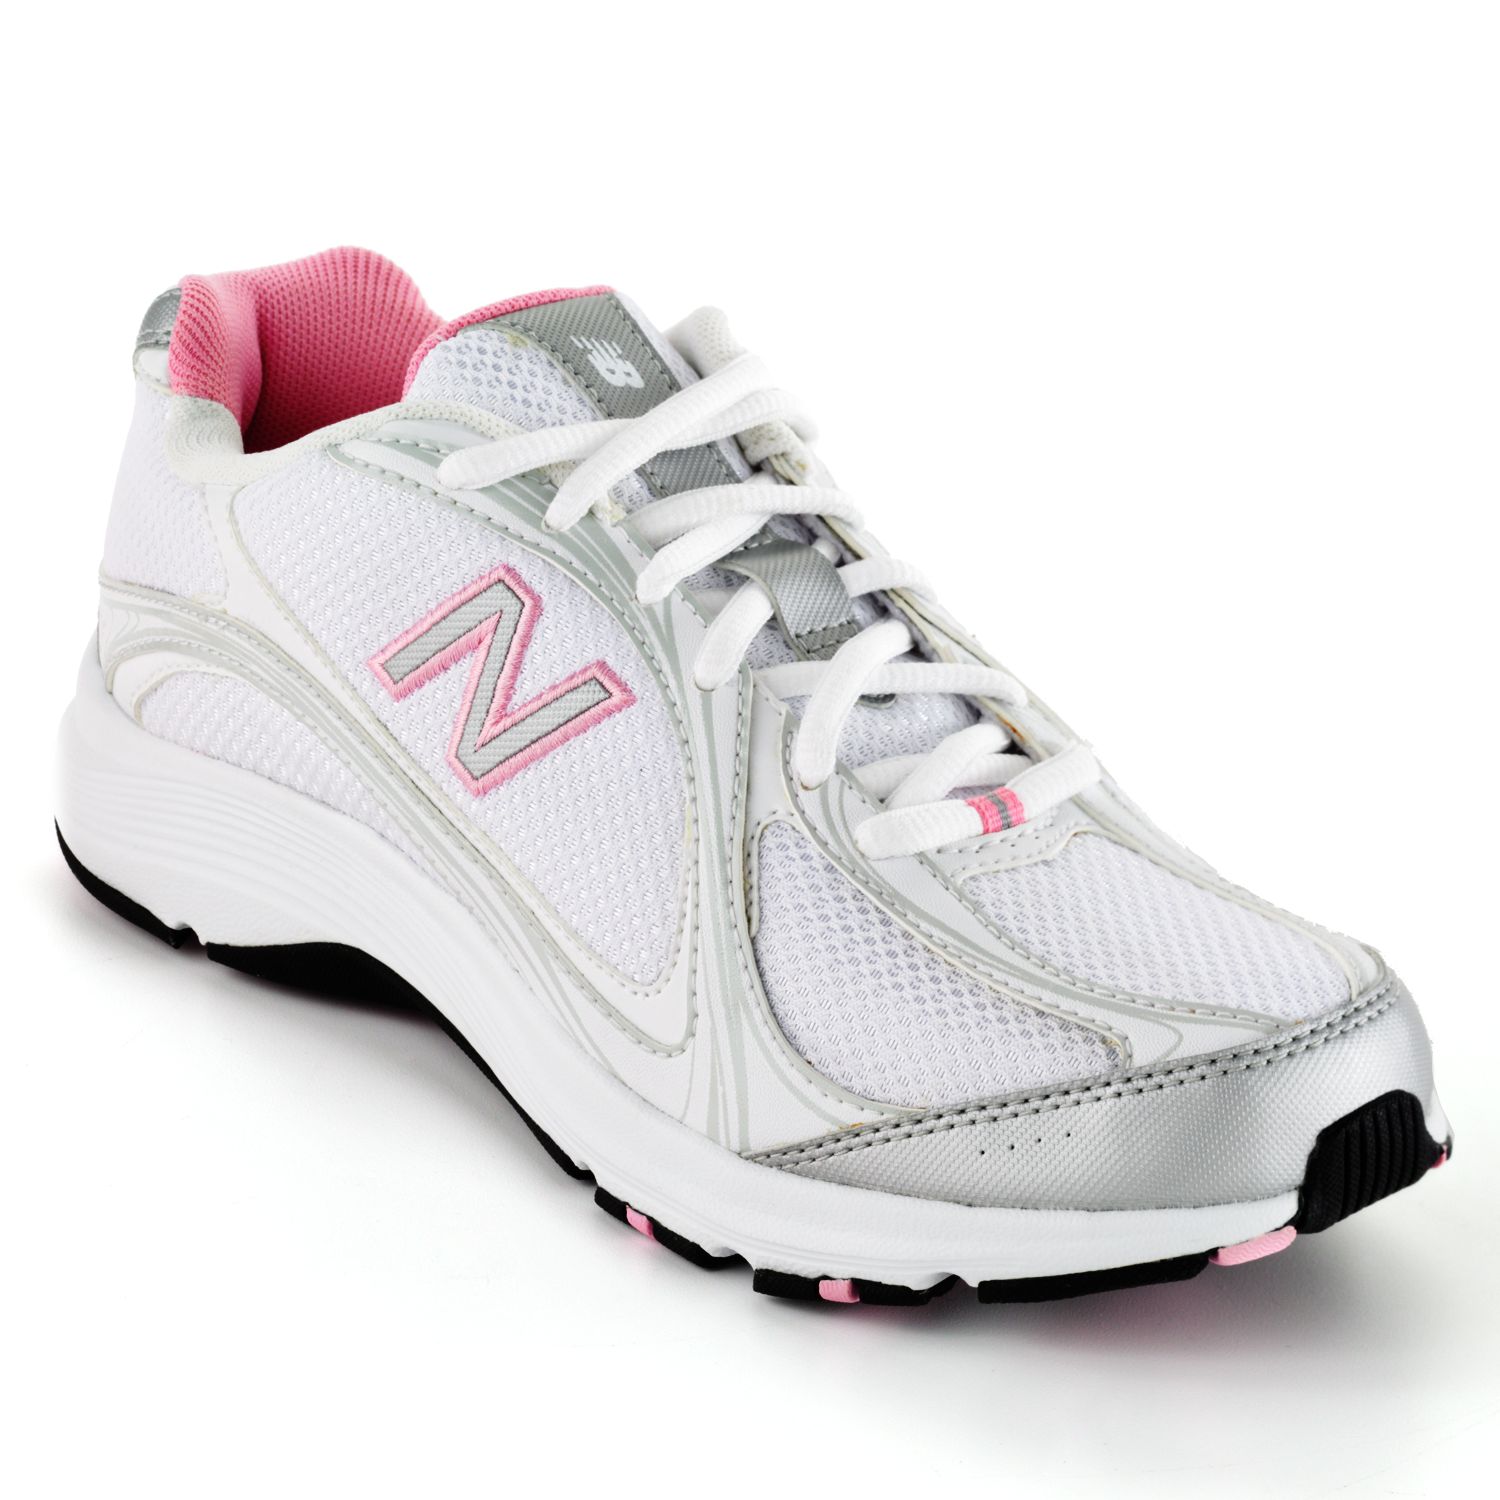 New Balance 496 Walking Shoes - Women